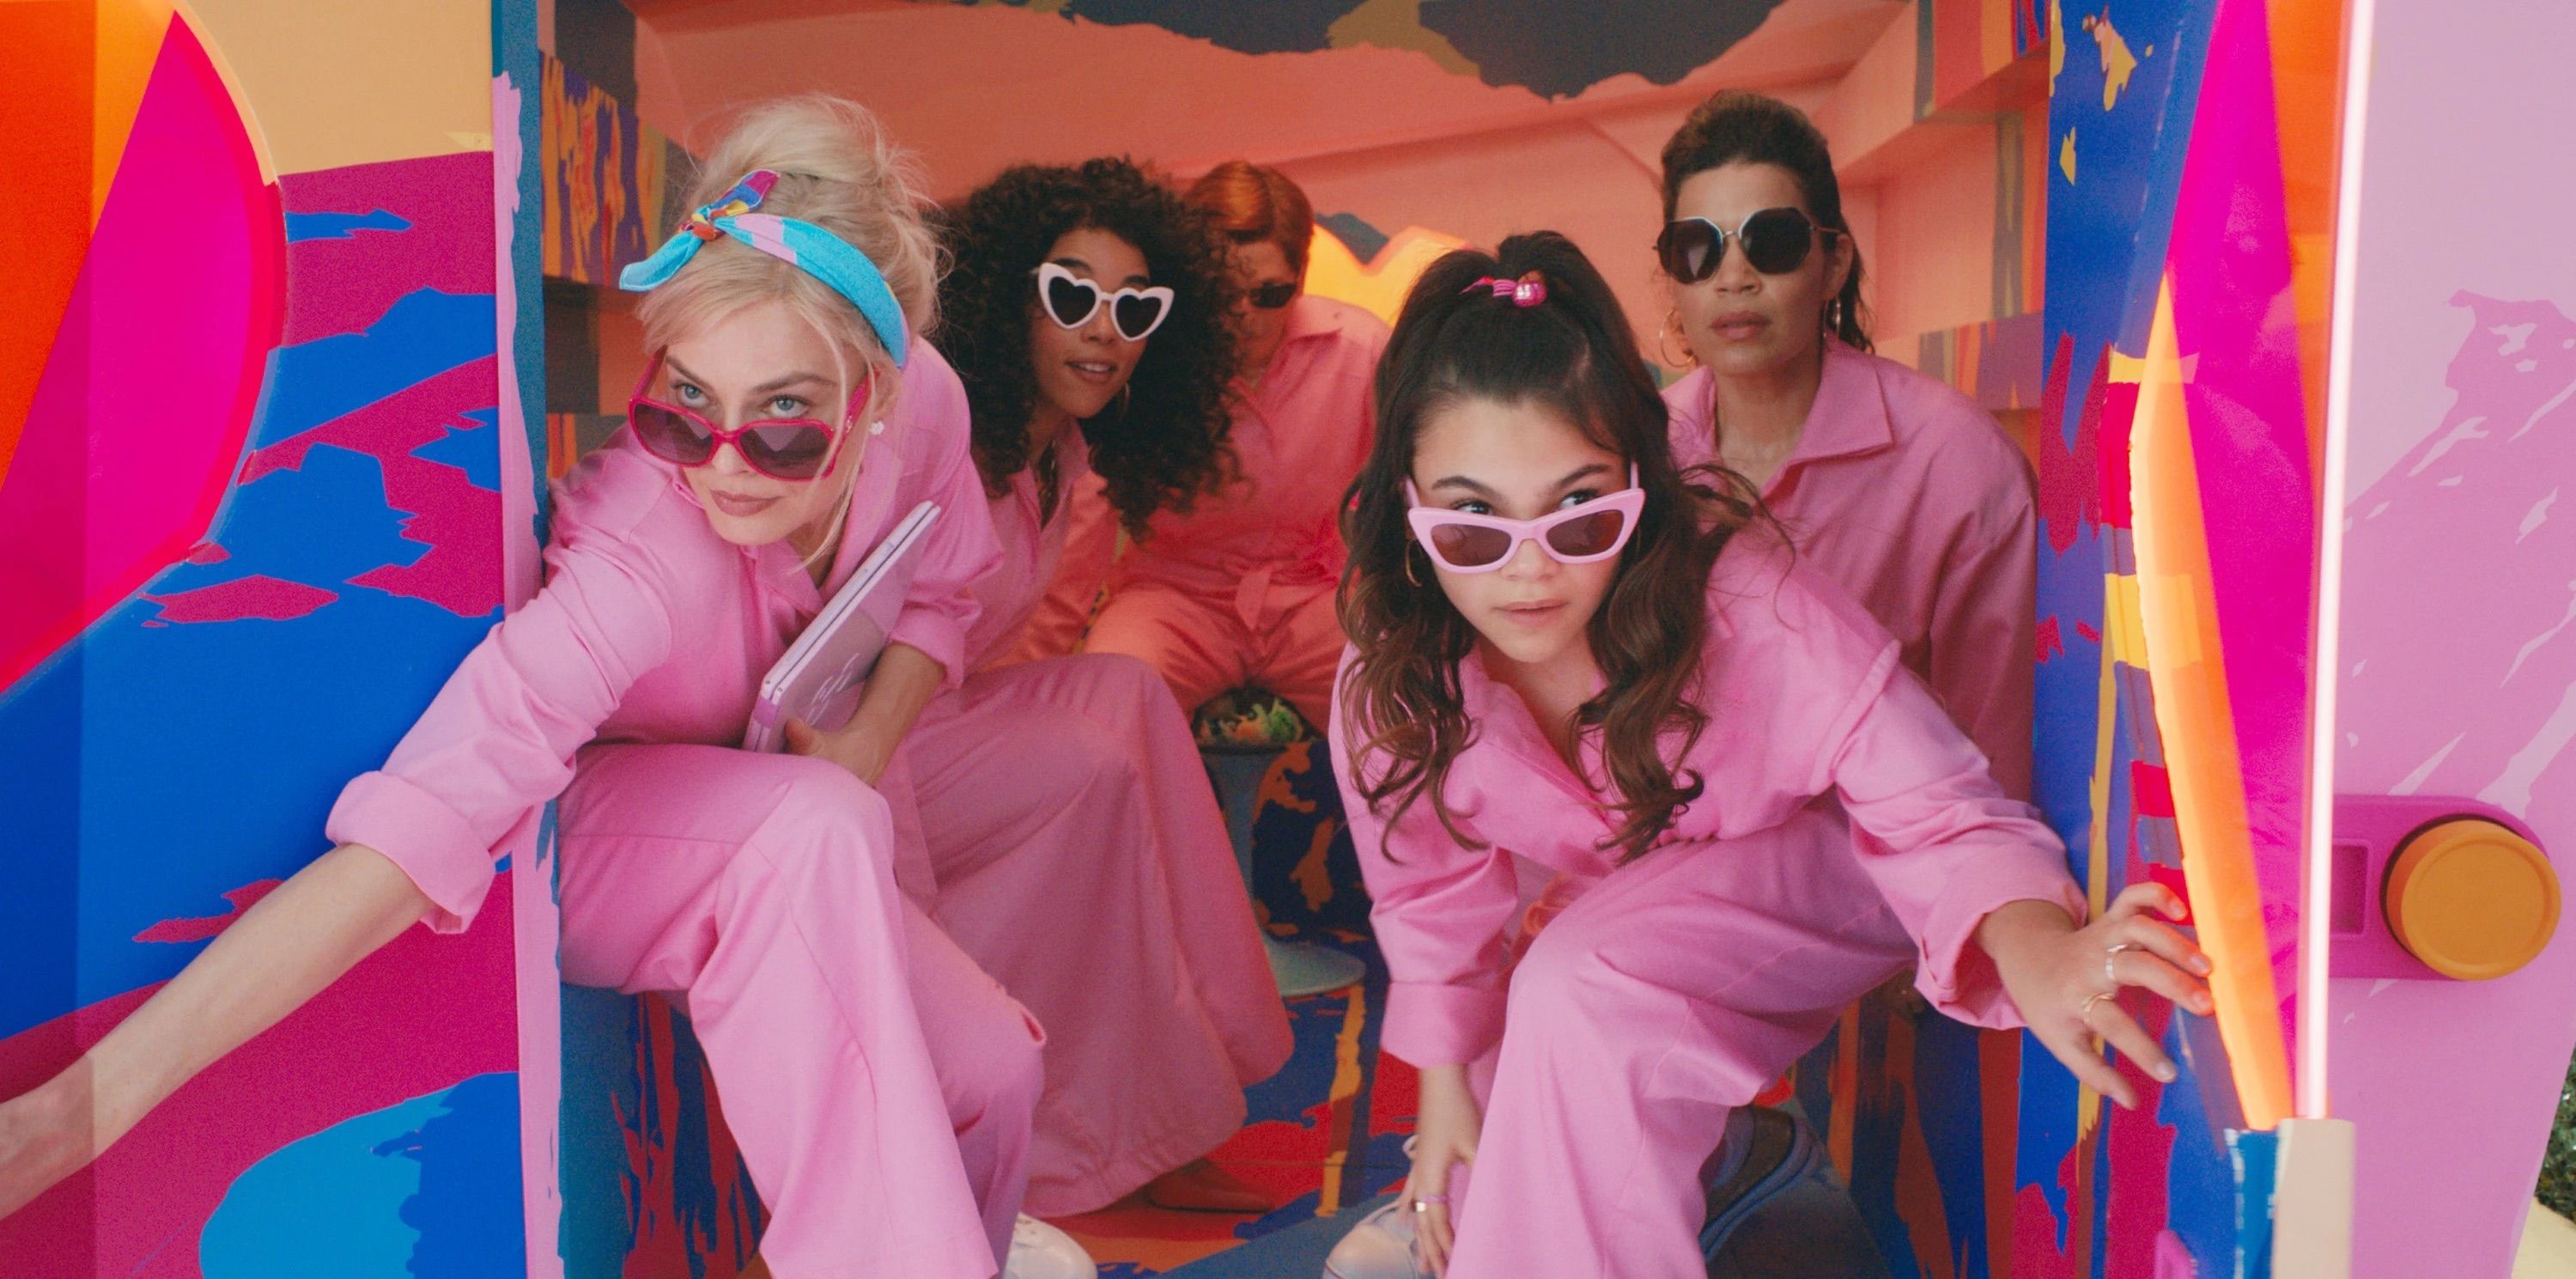 Vestindo disfarces cor-de-rosa, Barbie, Sasha, Gloria e as outras bonecas recuperam Barbieland